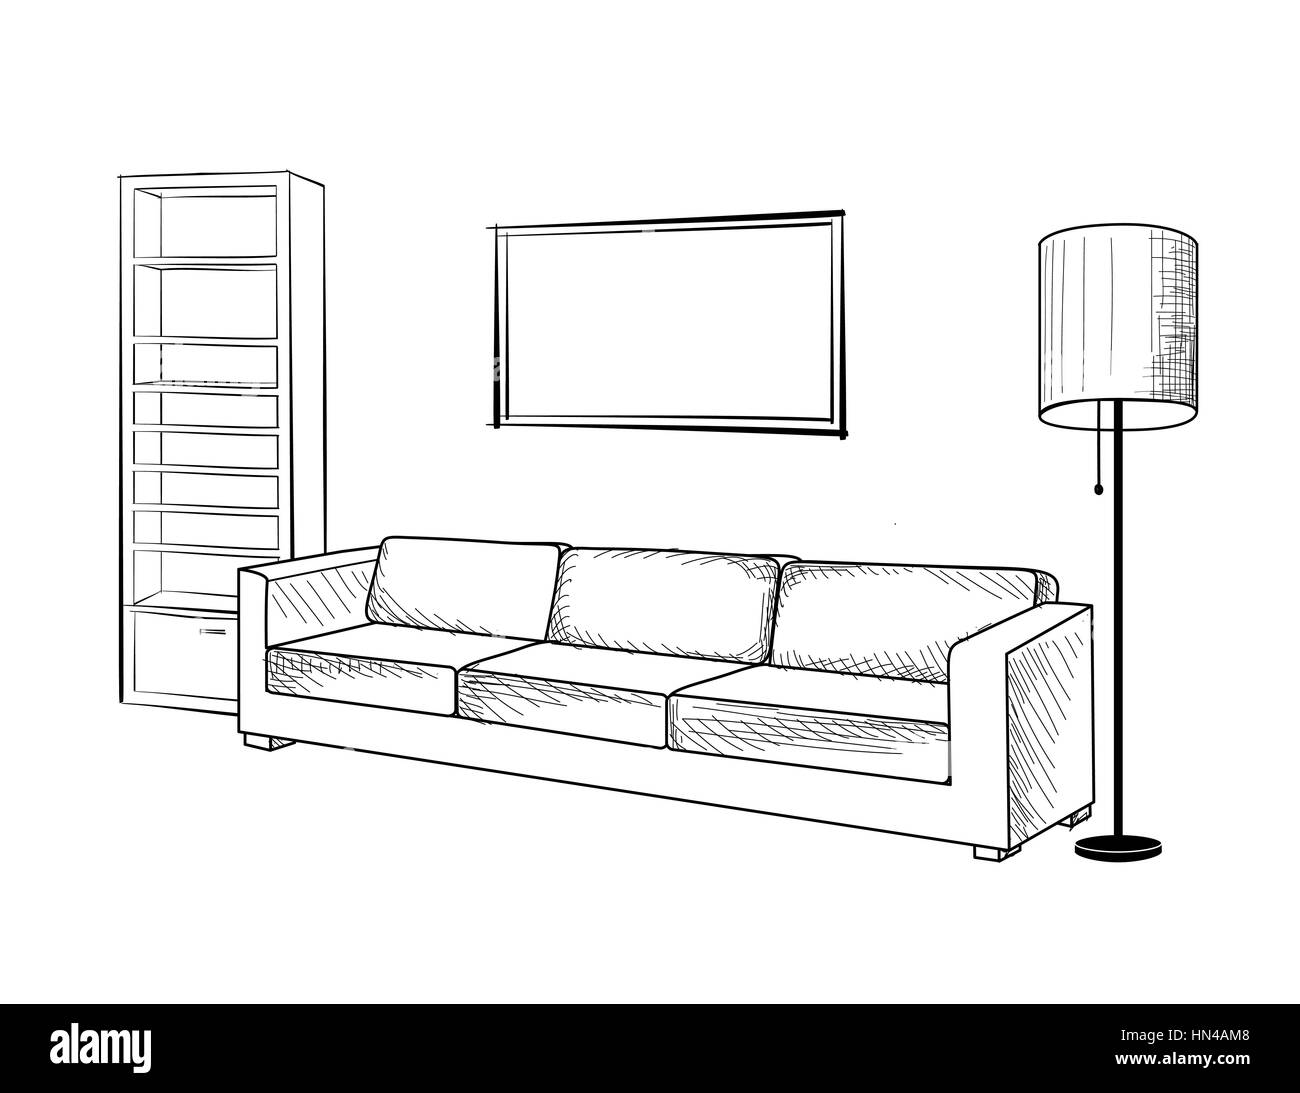 Inneneinrichtung mit Sofa, Stehlampe, Bücherregal, Bücher und Bild an der Wand. Wohnzimmer hnd Zeichnung Design. Stock Vektor